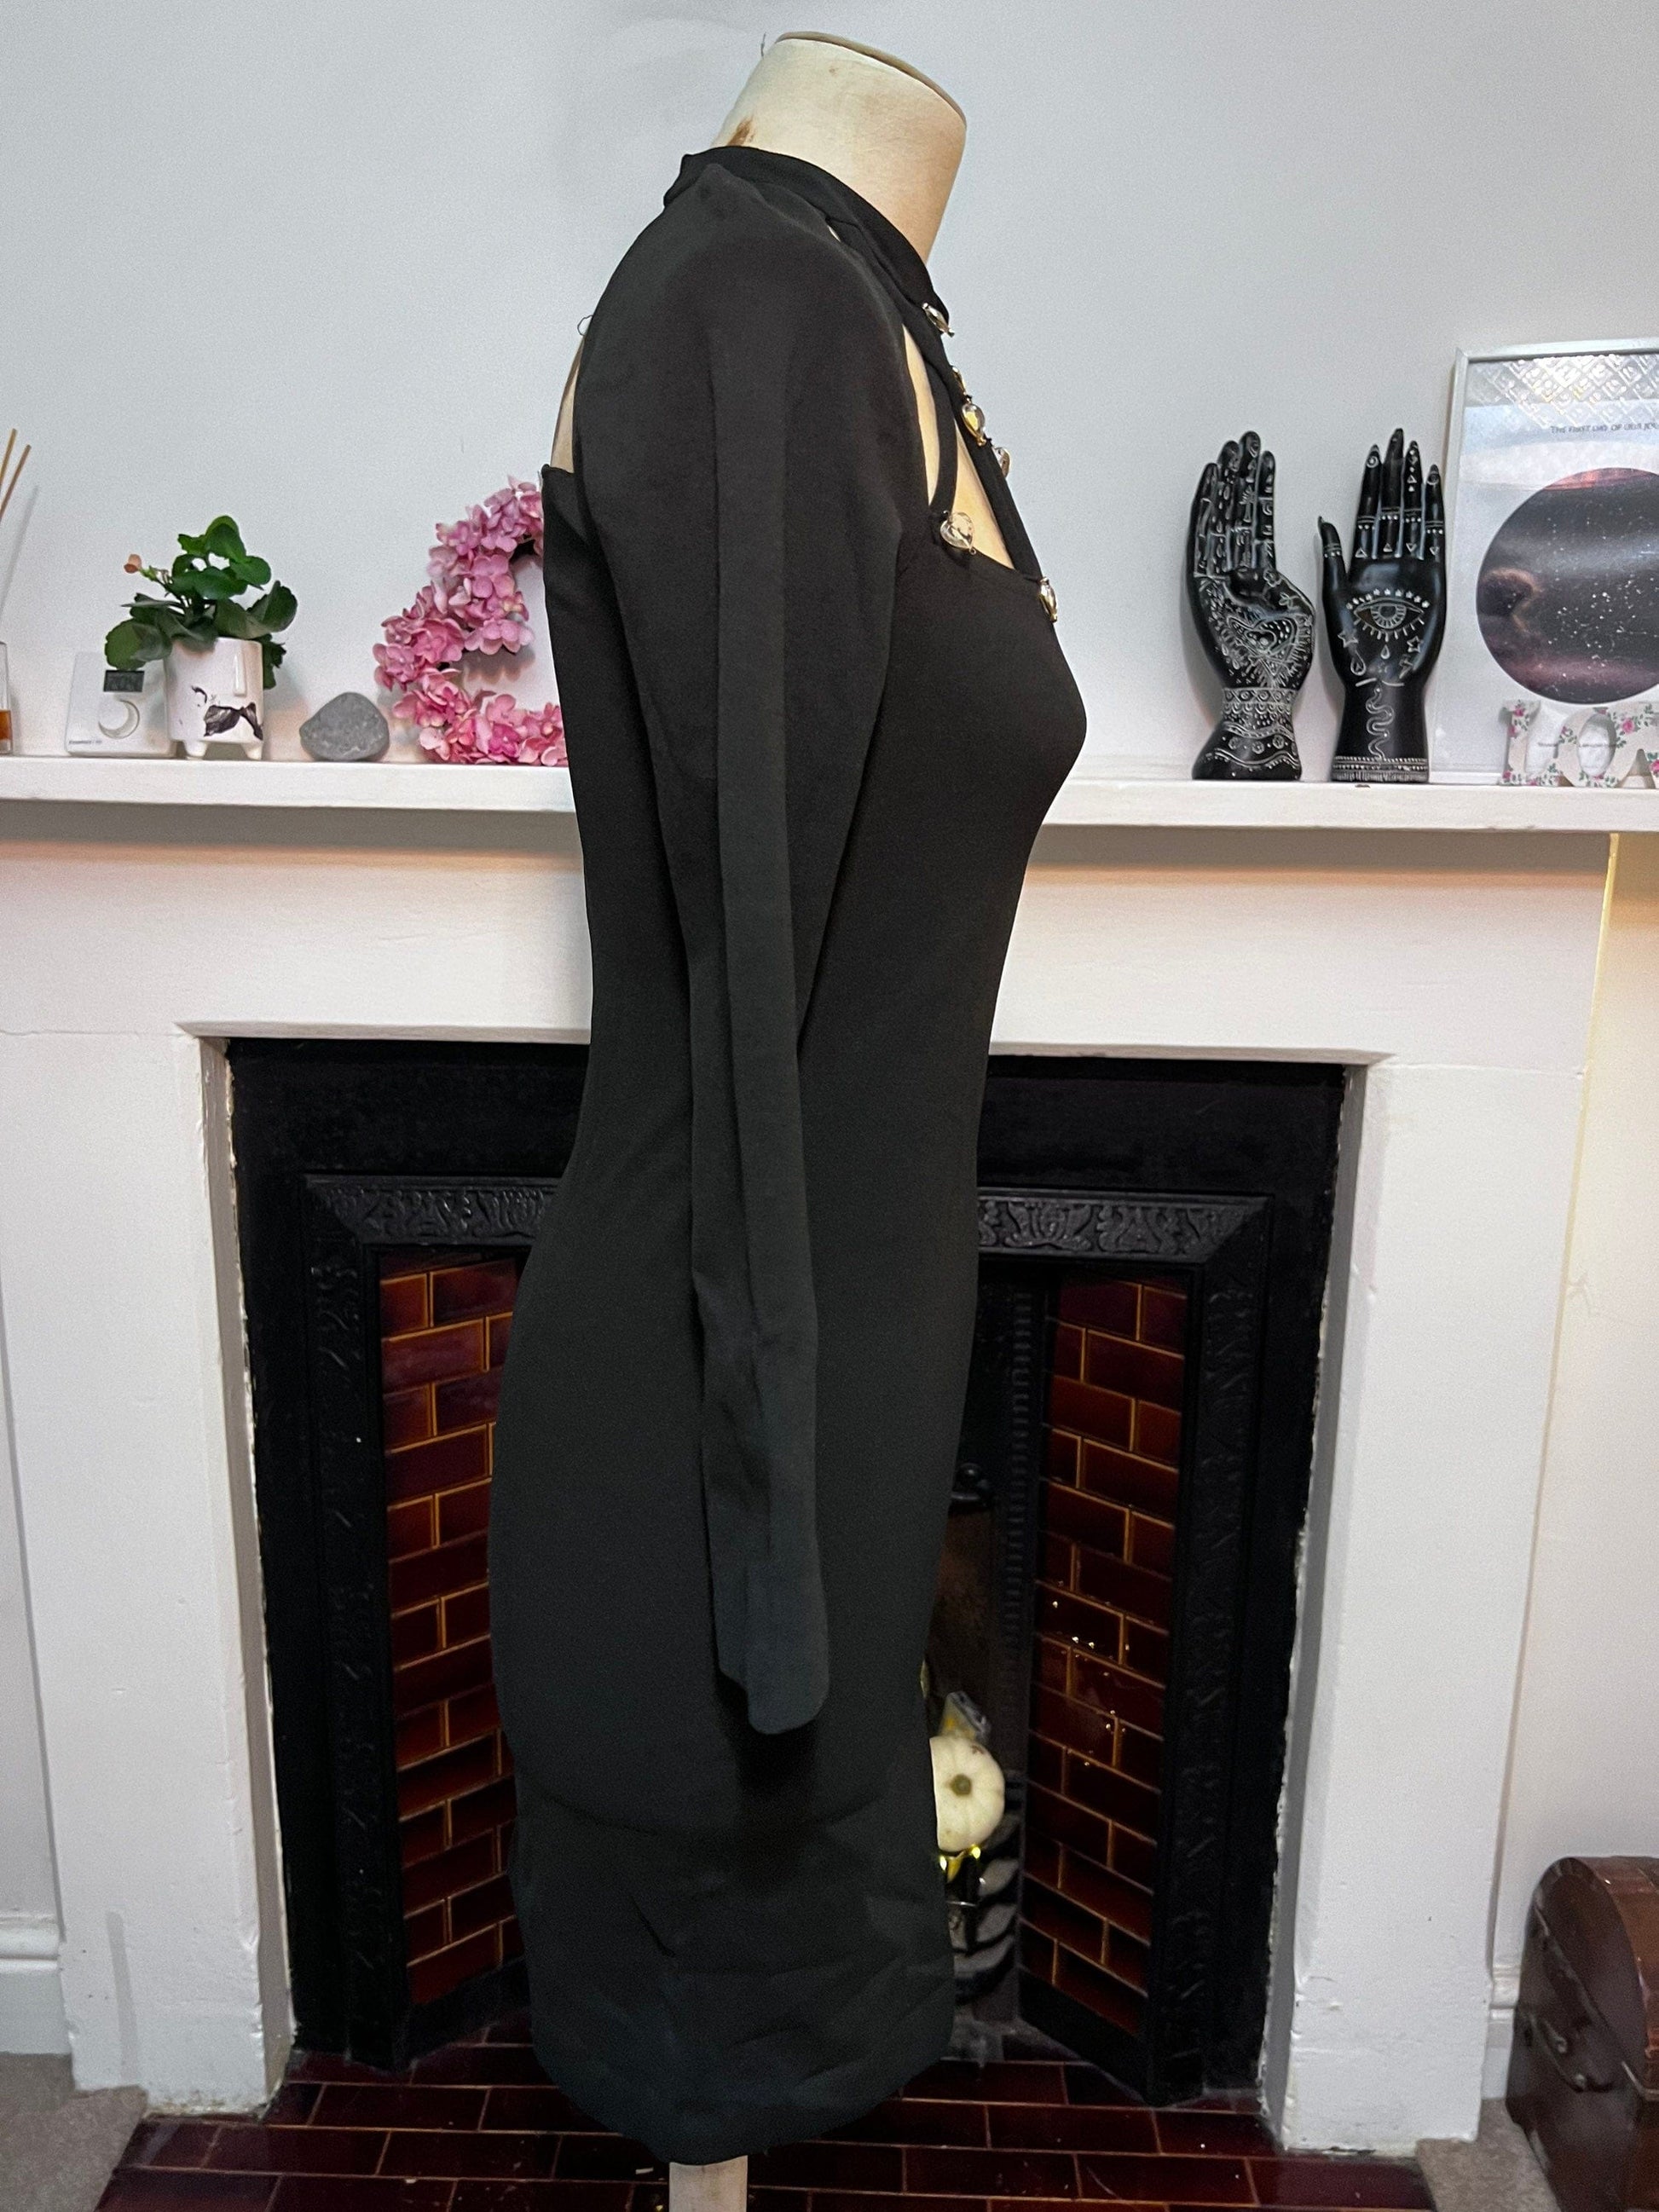 Vintage 80s Black Bodycon Dress Cages neckline with diamanté heart details 3/4 Sleeve open back dress UK8-10